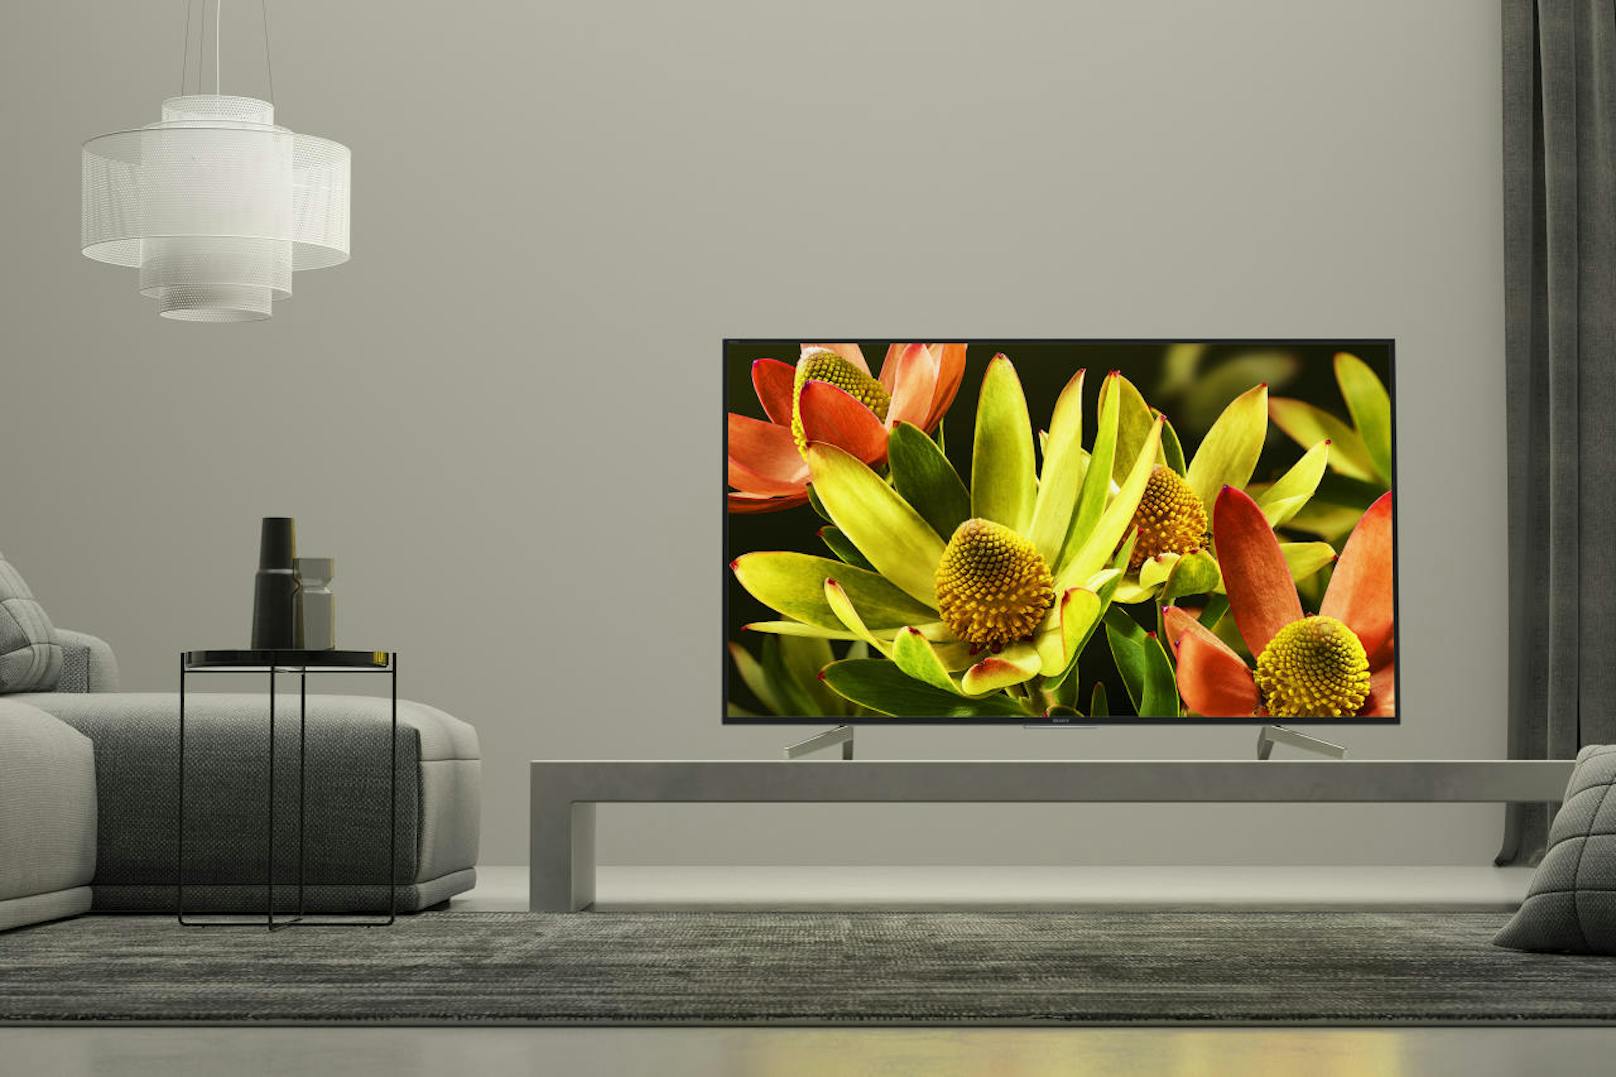 Sony kündigt zwei neue 4K HDR TV-Serien an. Die neuen Fernseher der XF83-Serie verfügen über den 4K HDR-Prozessor X1, der ein extrem realistisches Bild mit erweitertem Kontrastumfang garantiert. Die Geräte der XF70-Serie bieten 4K HDR-Qualität in vielen verschiedenen Bildschirmgrößen. Startpreis: ab 1.499 Euro.